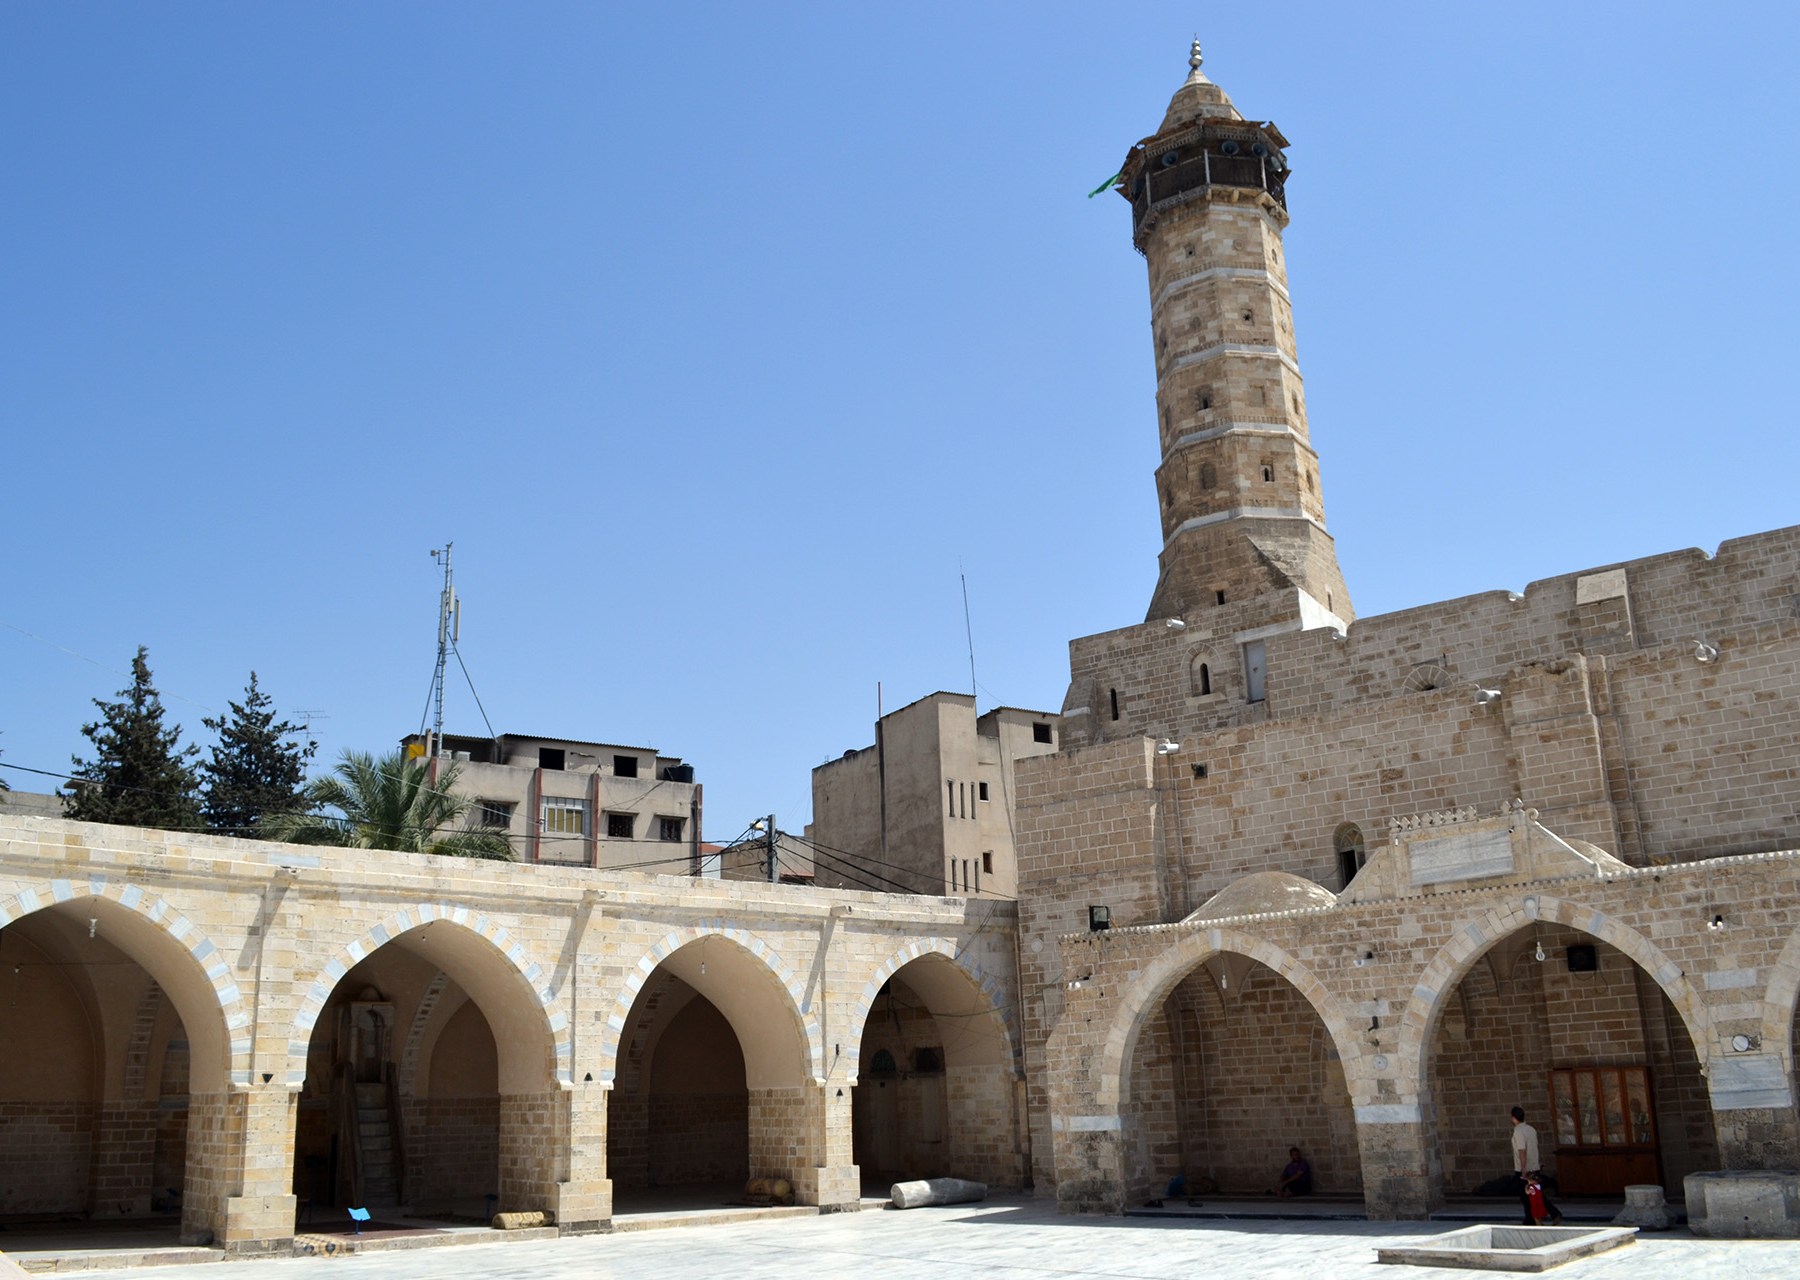 المسجد العمري الكبير في غزة.. اندحر الغزاة وبقي شامخا | منوعات | الجزيرة نت